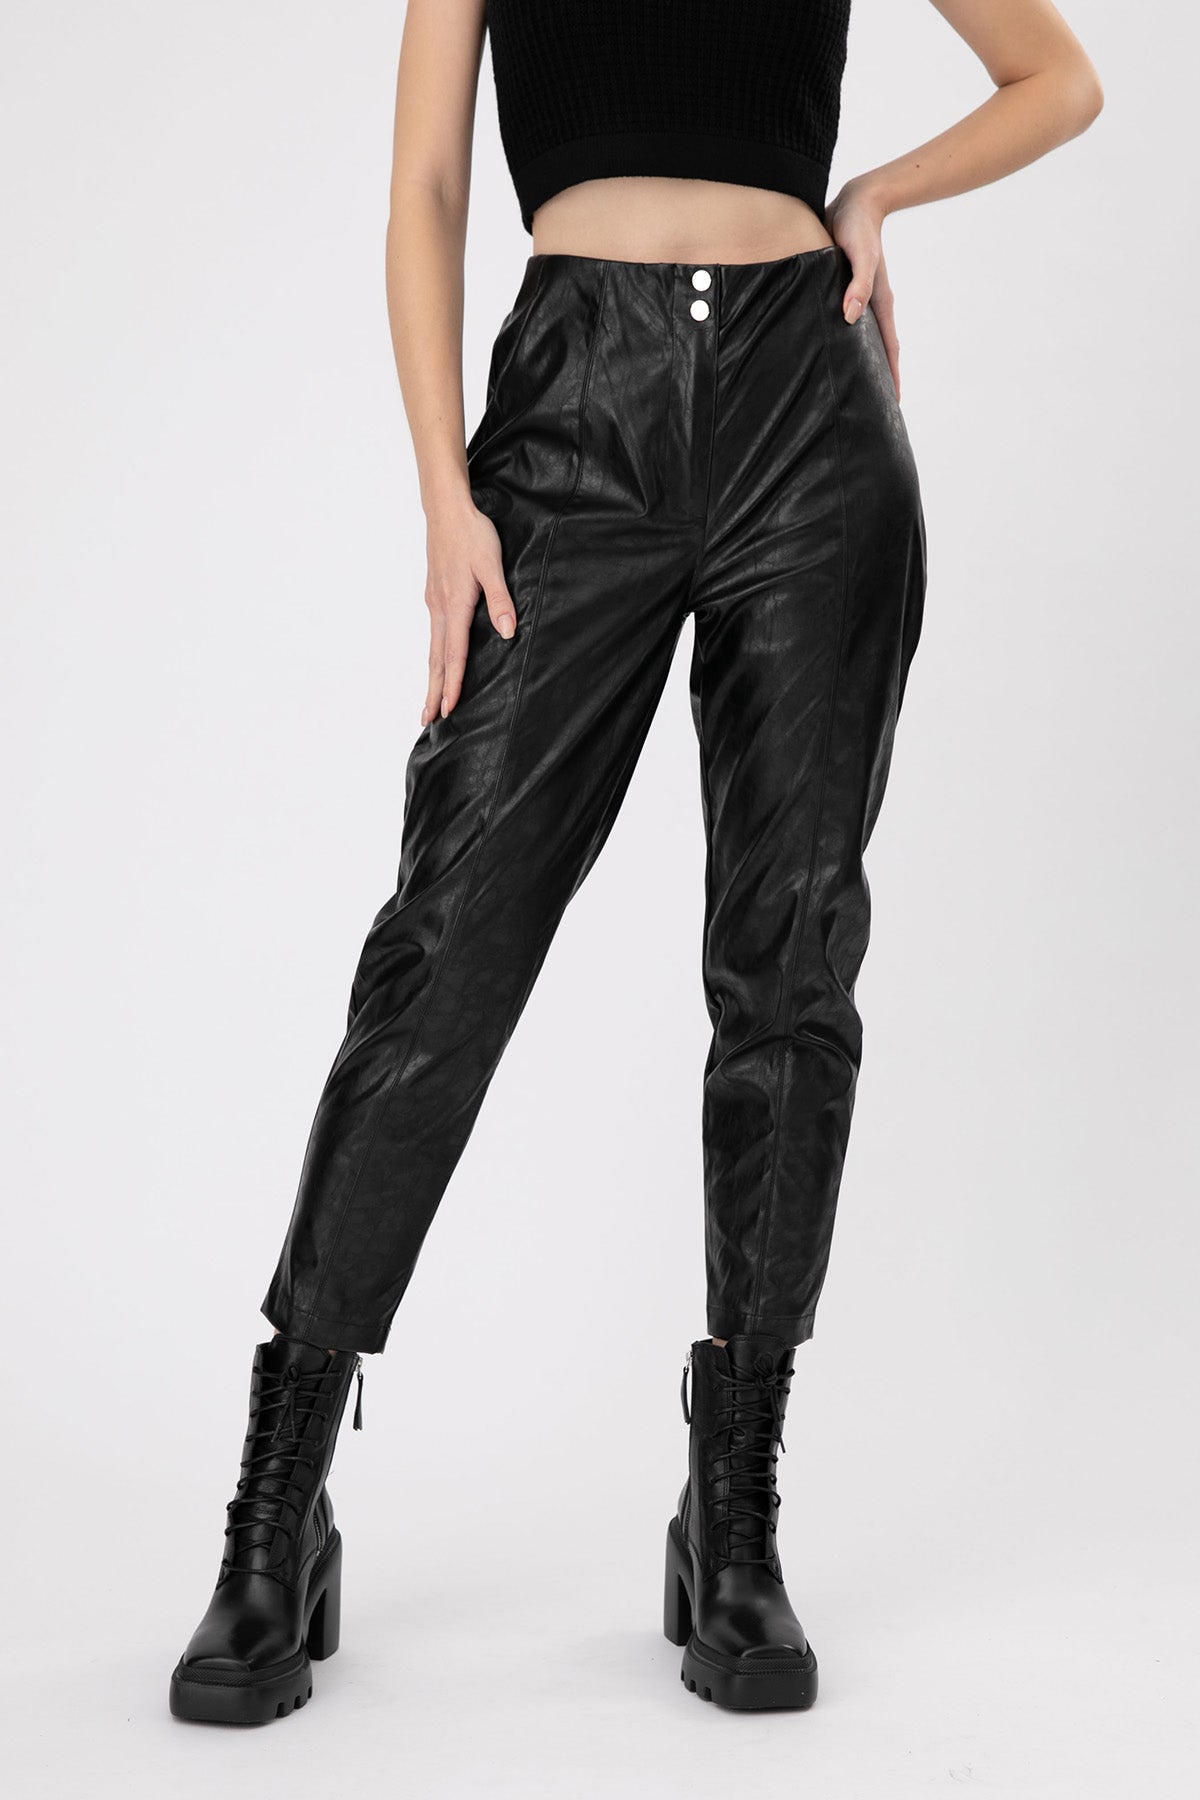 Lynne Beli Lastikli Deri Pantolon-Libas Trendy Fashion Store